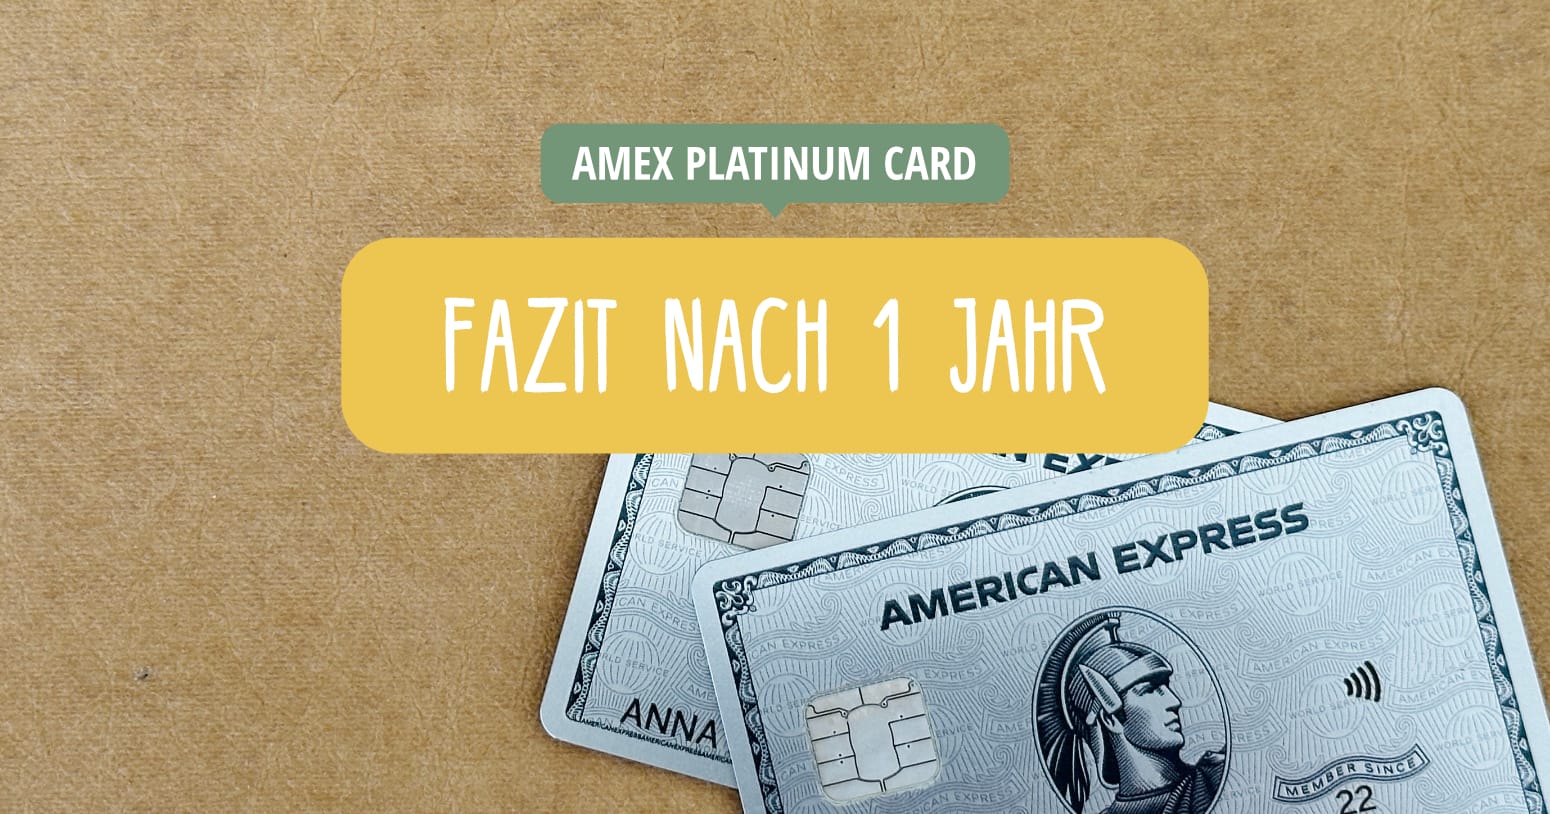 American Express Platinum Card - Fazit nach 1 Jahr und Erfahrung